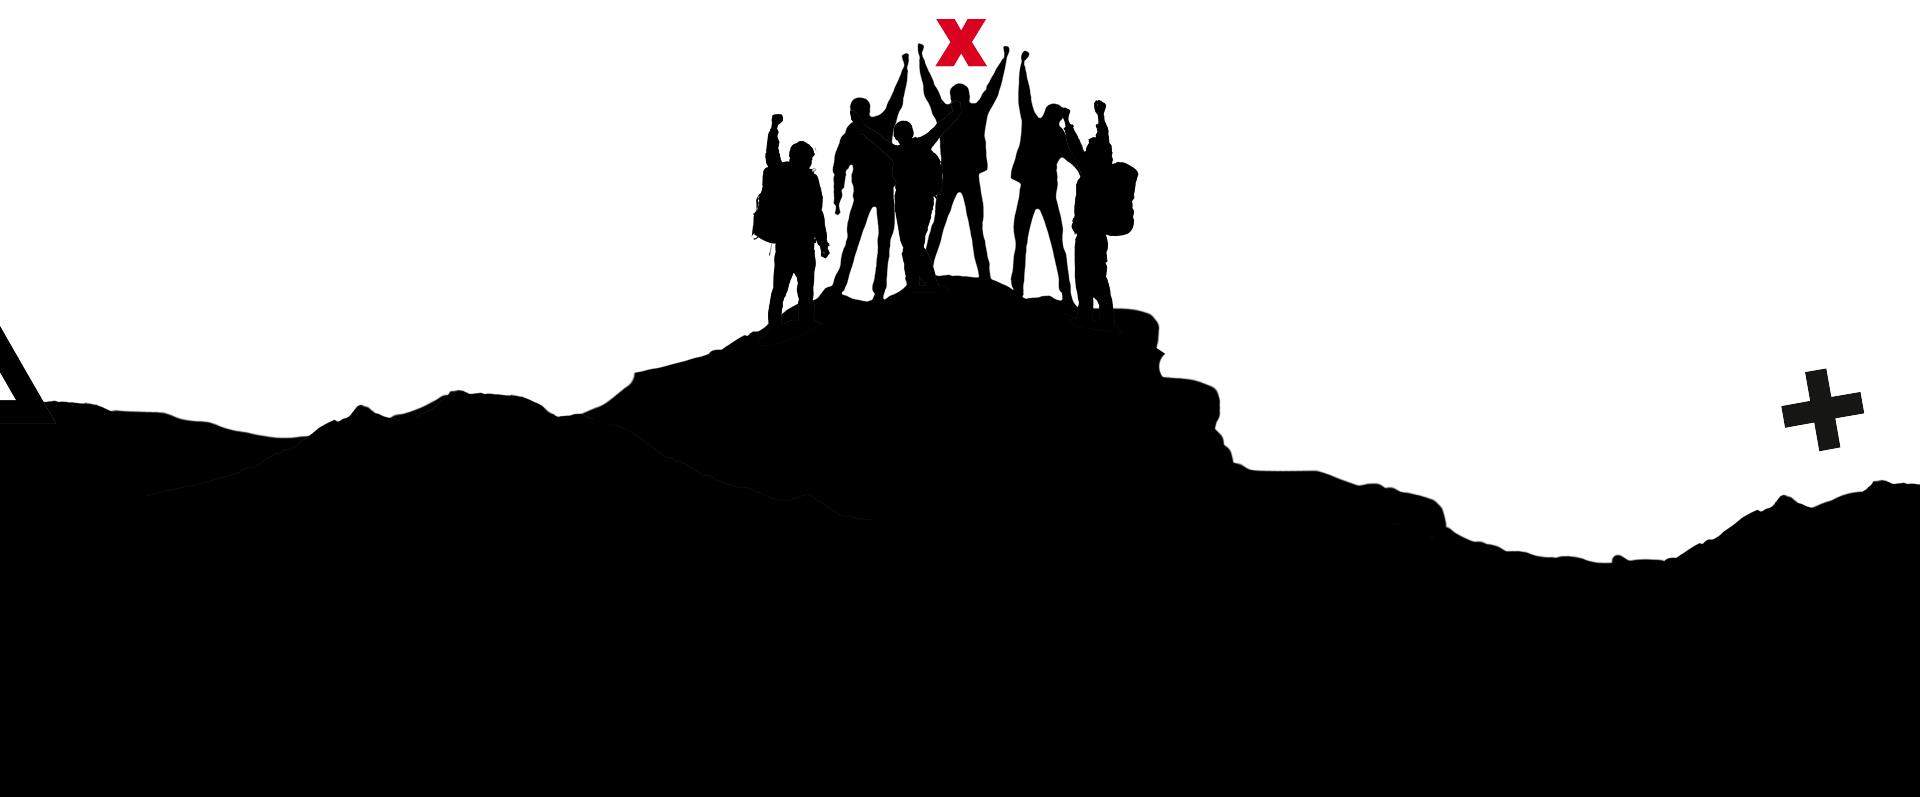 Eine Silhouette von Menschen, die auf einem Berg stehen und einen gemeinsamen BCxP-Teamerfolg feiern.